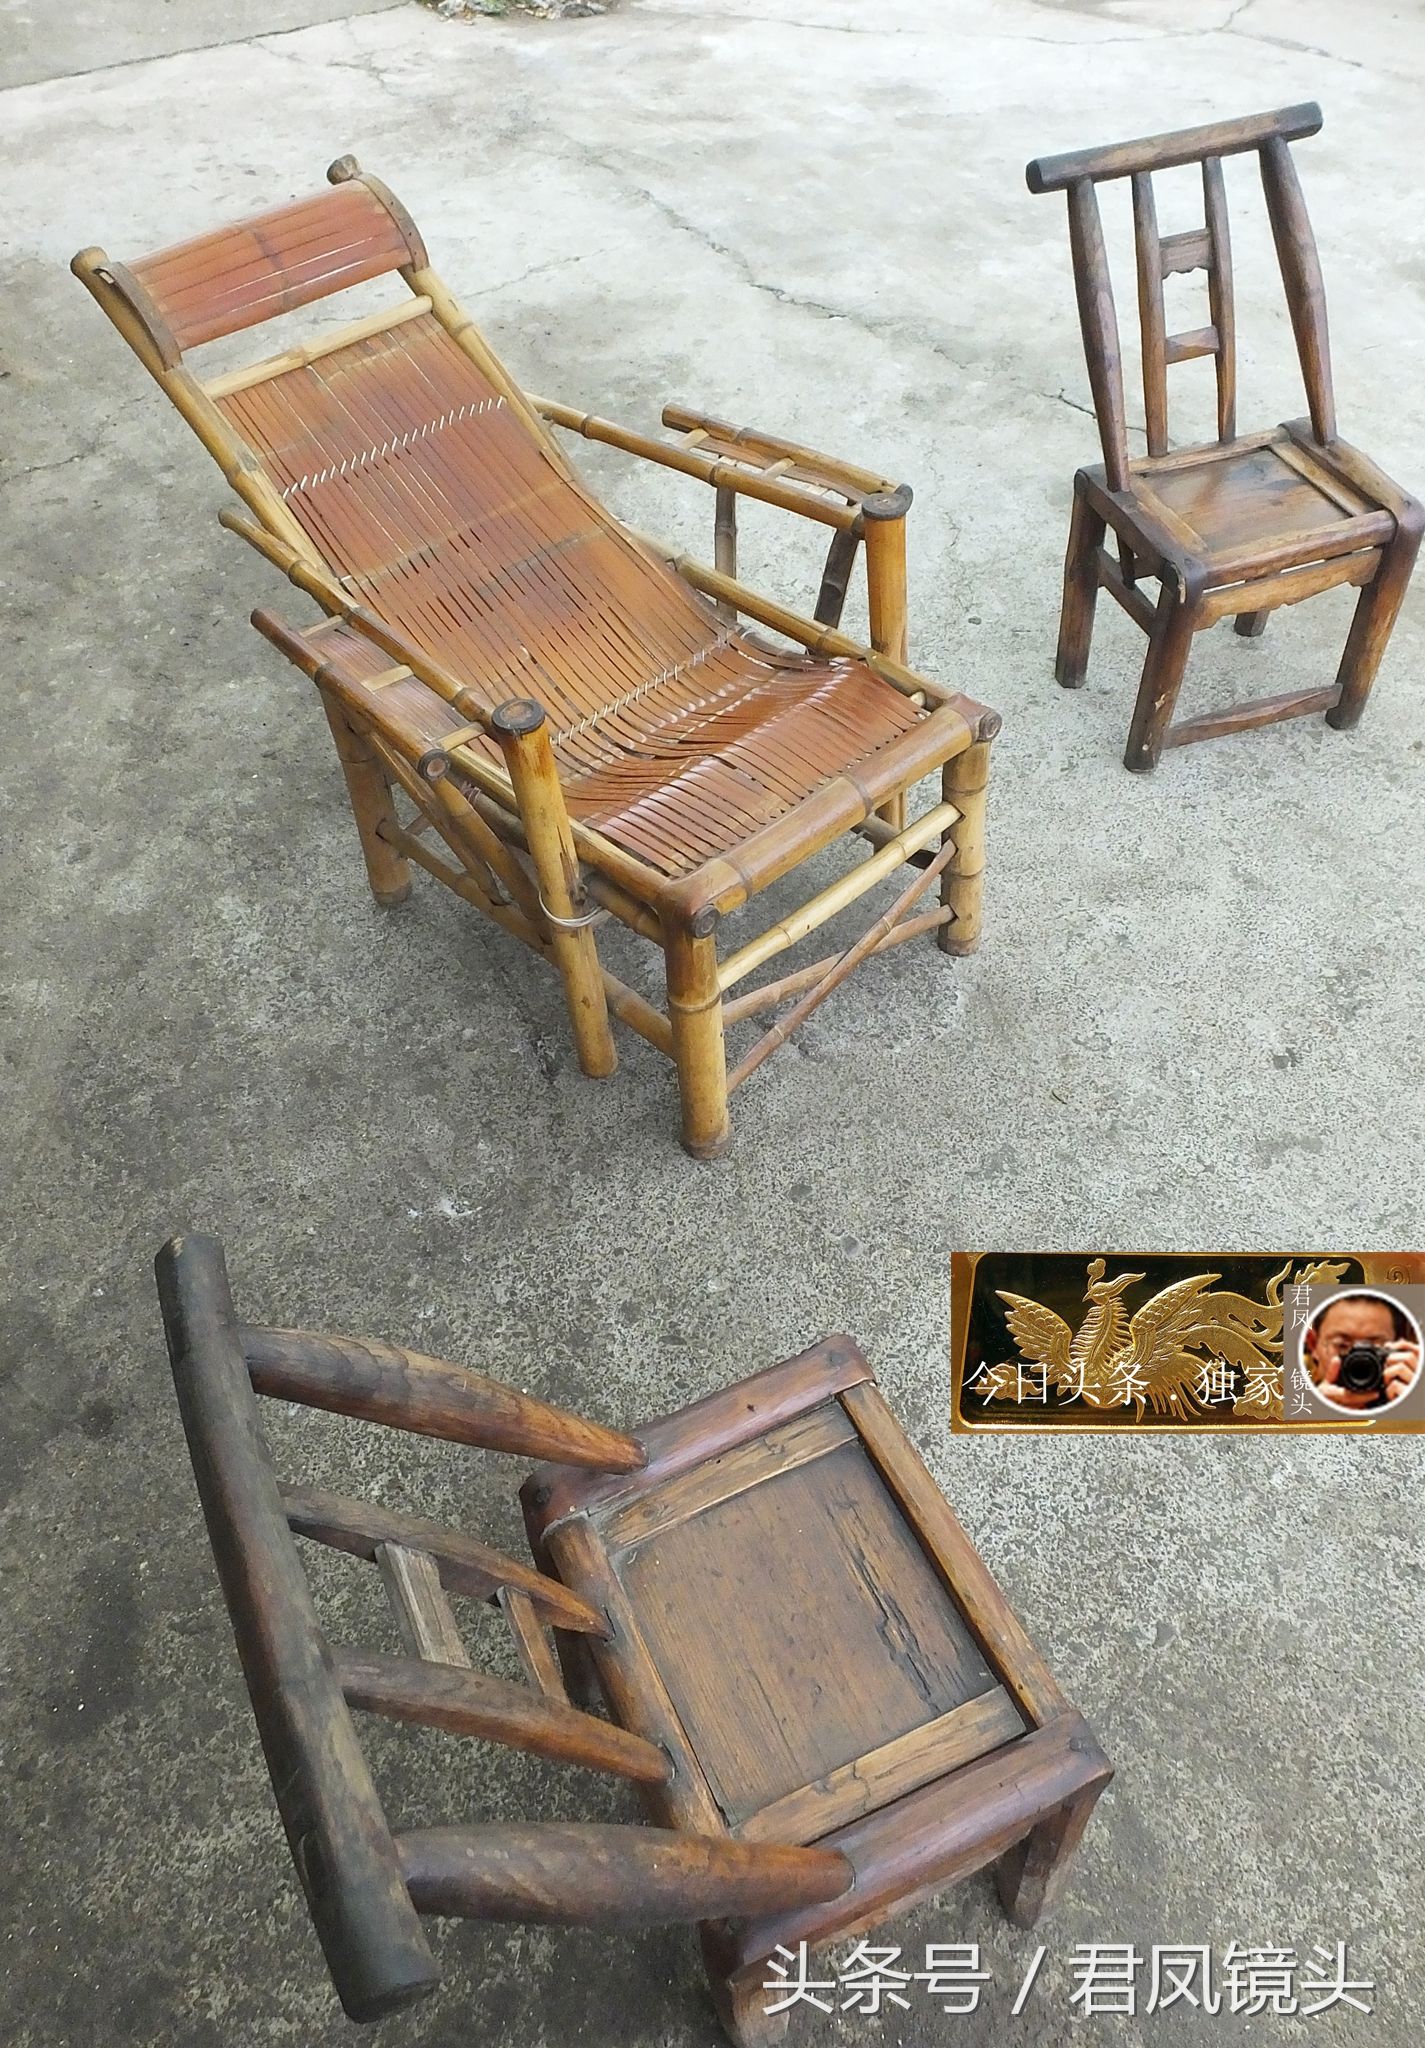 湖北宜昌:农民家的木椅,竹躺椅,哪个舒适?风车是谁发明的?